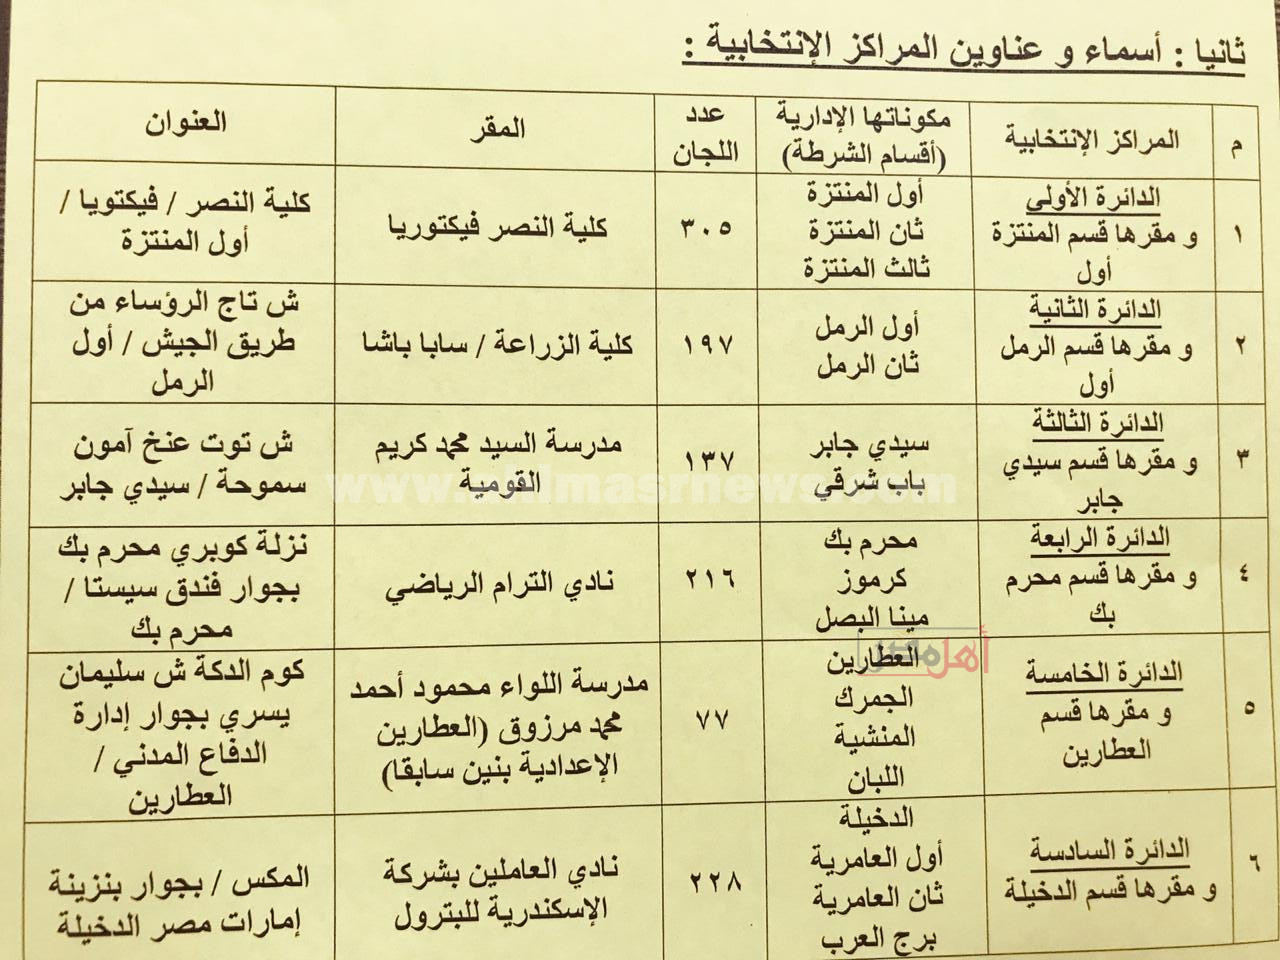 أماكن اللجان العامة لفرز أصوات الناخبين بالإسكندرية